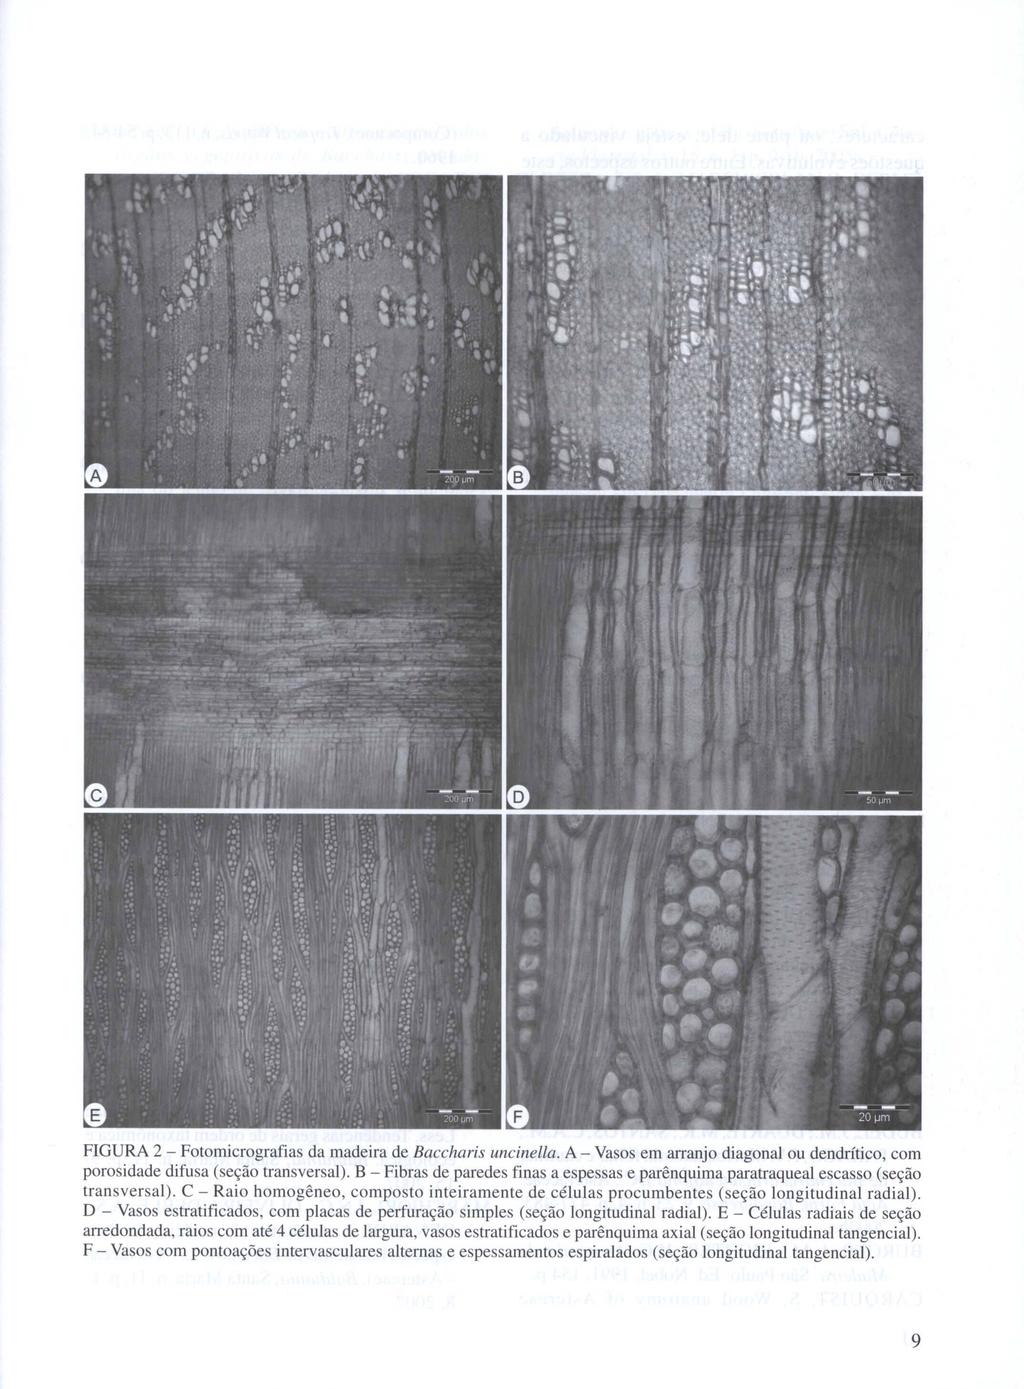 FIGURA 2 - Fotomicrografias da madeira de Baccharis uncinella. A - Vasos em arranjo diagonal ou dendrítico, com porosidade difusa (seção transversal).